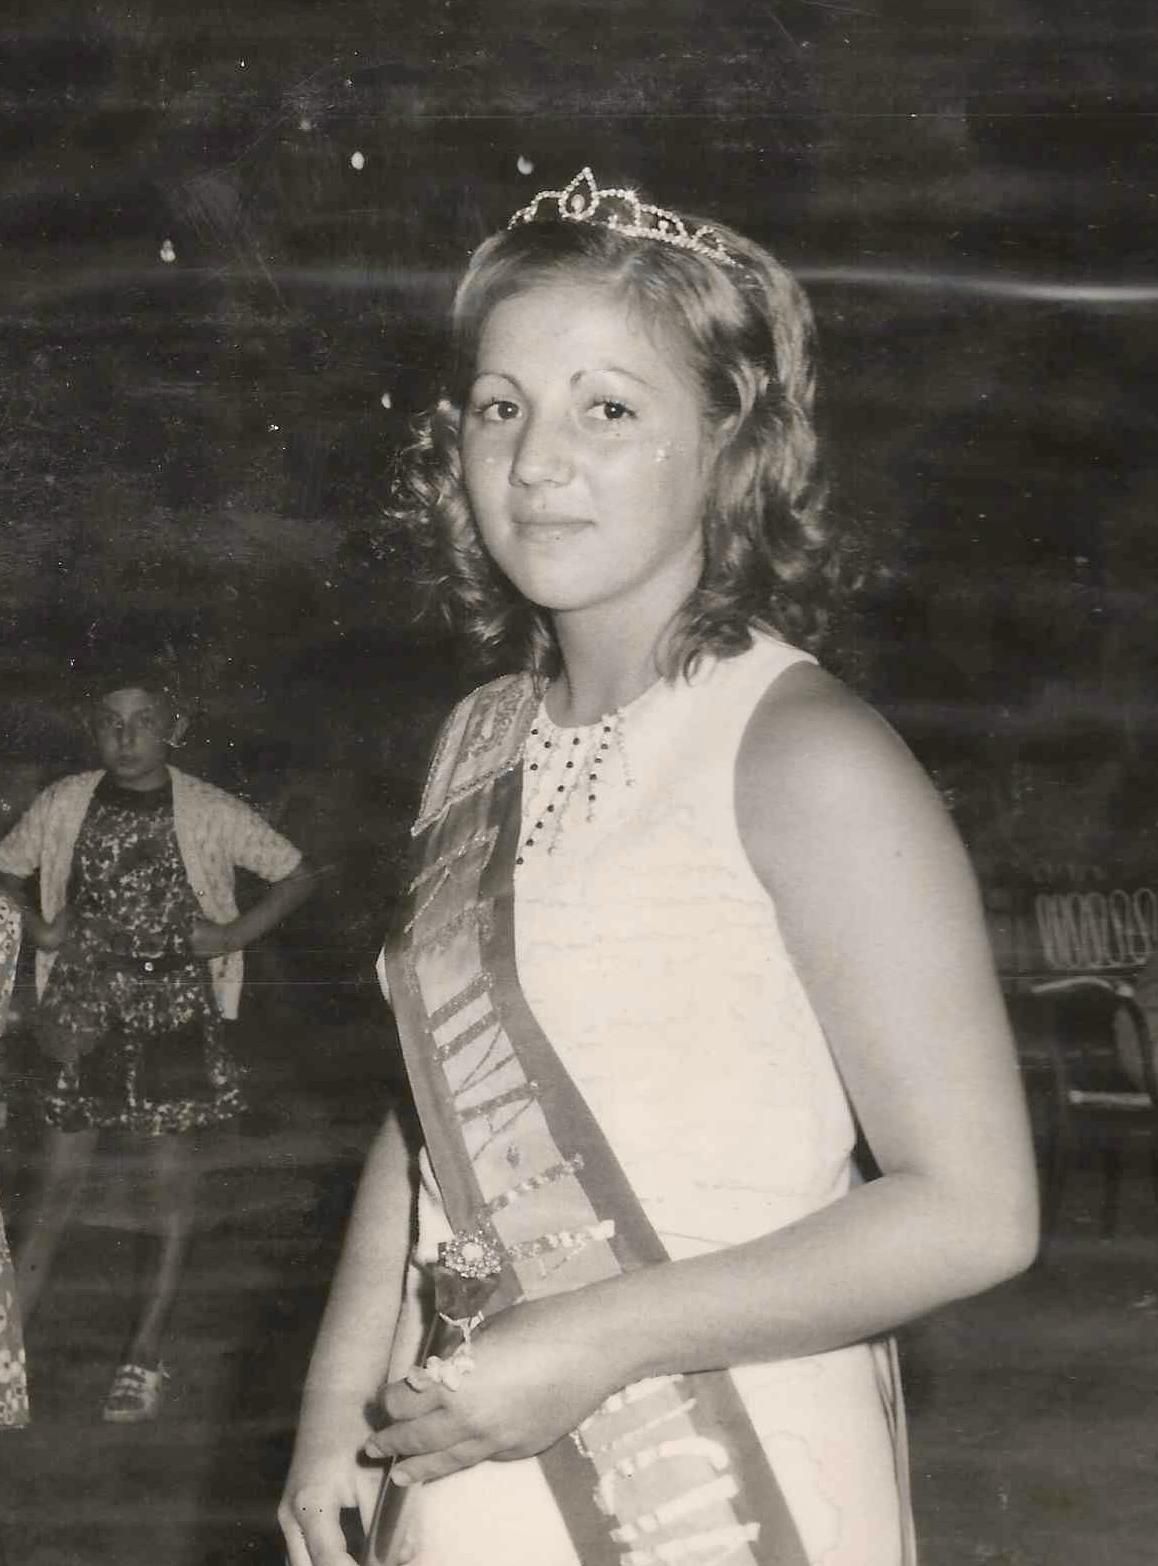 La Reina de 1972, Antonia Alonso.